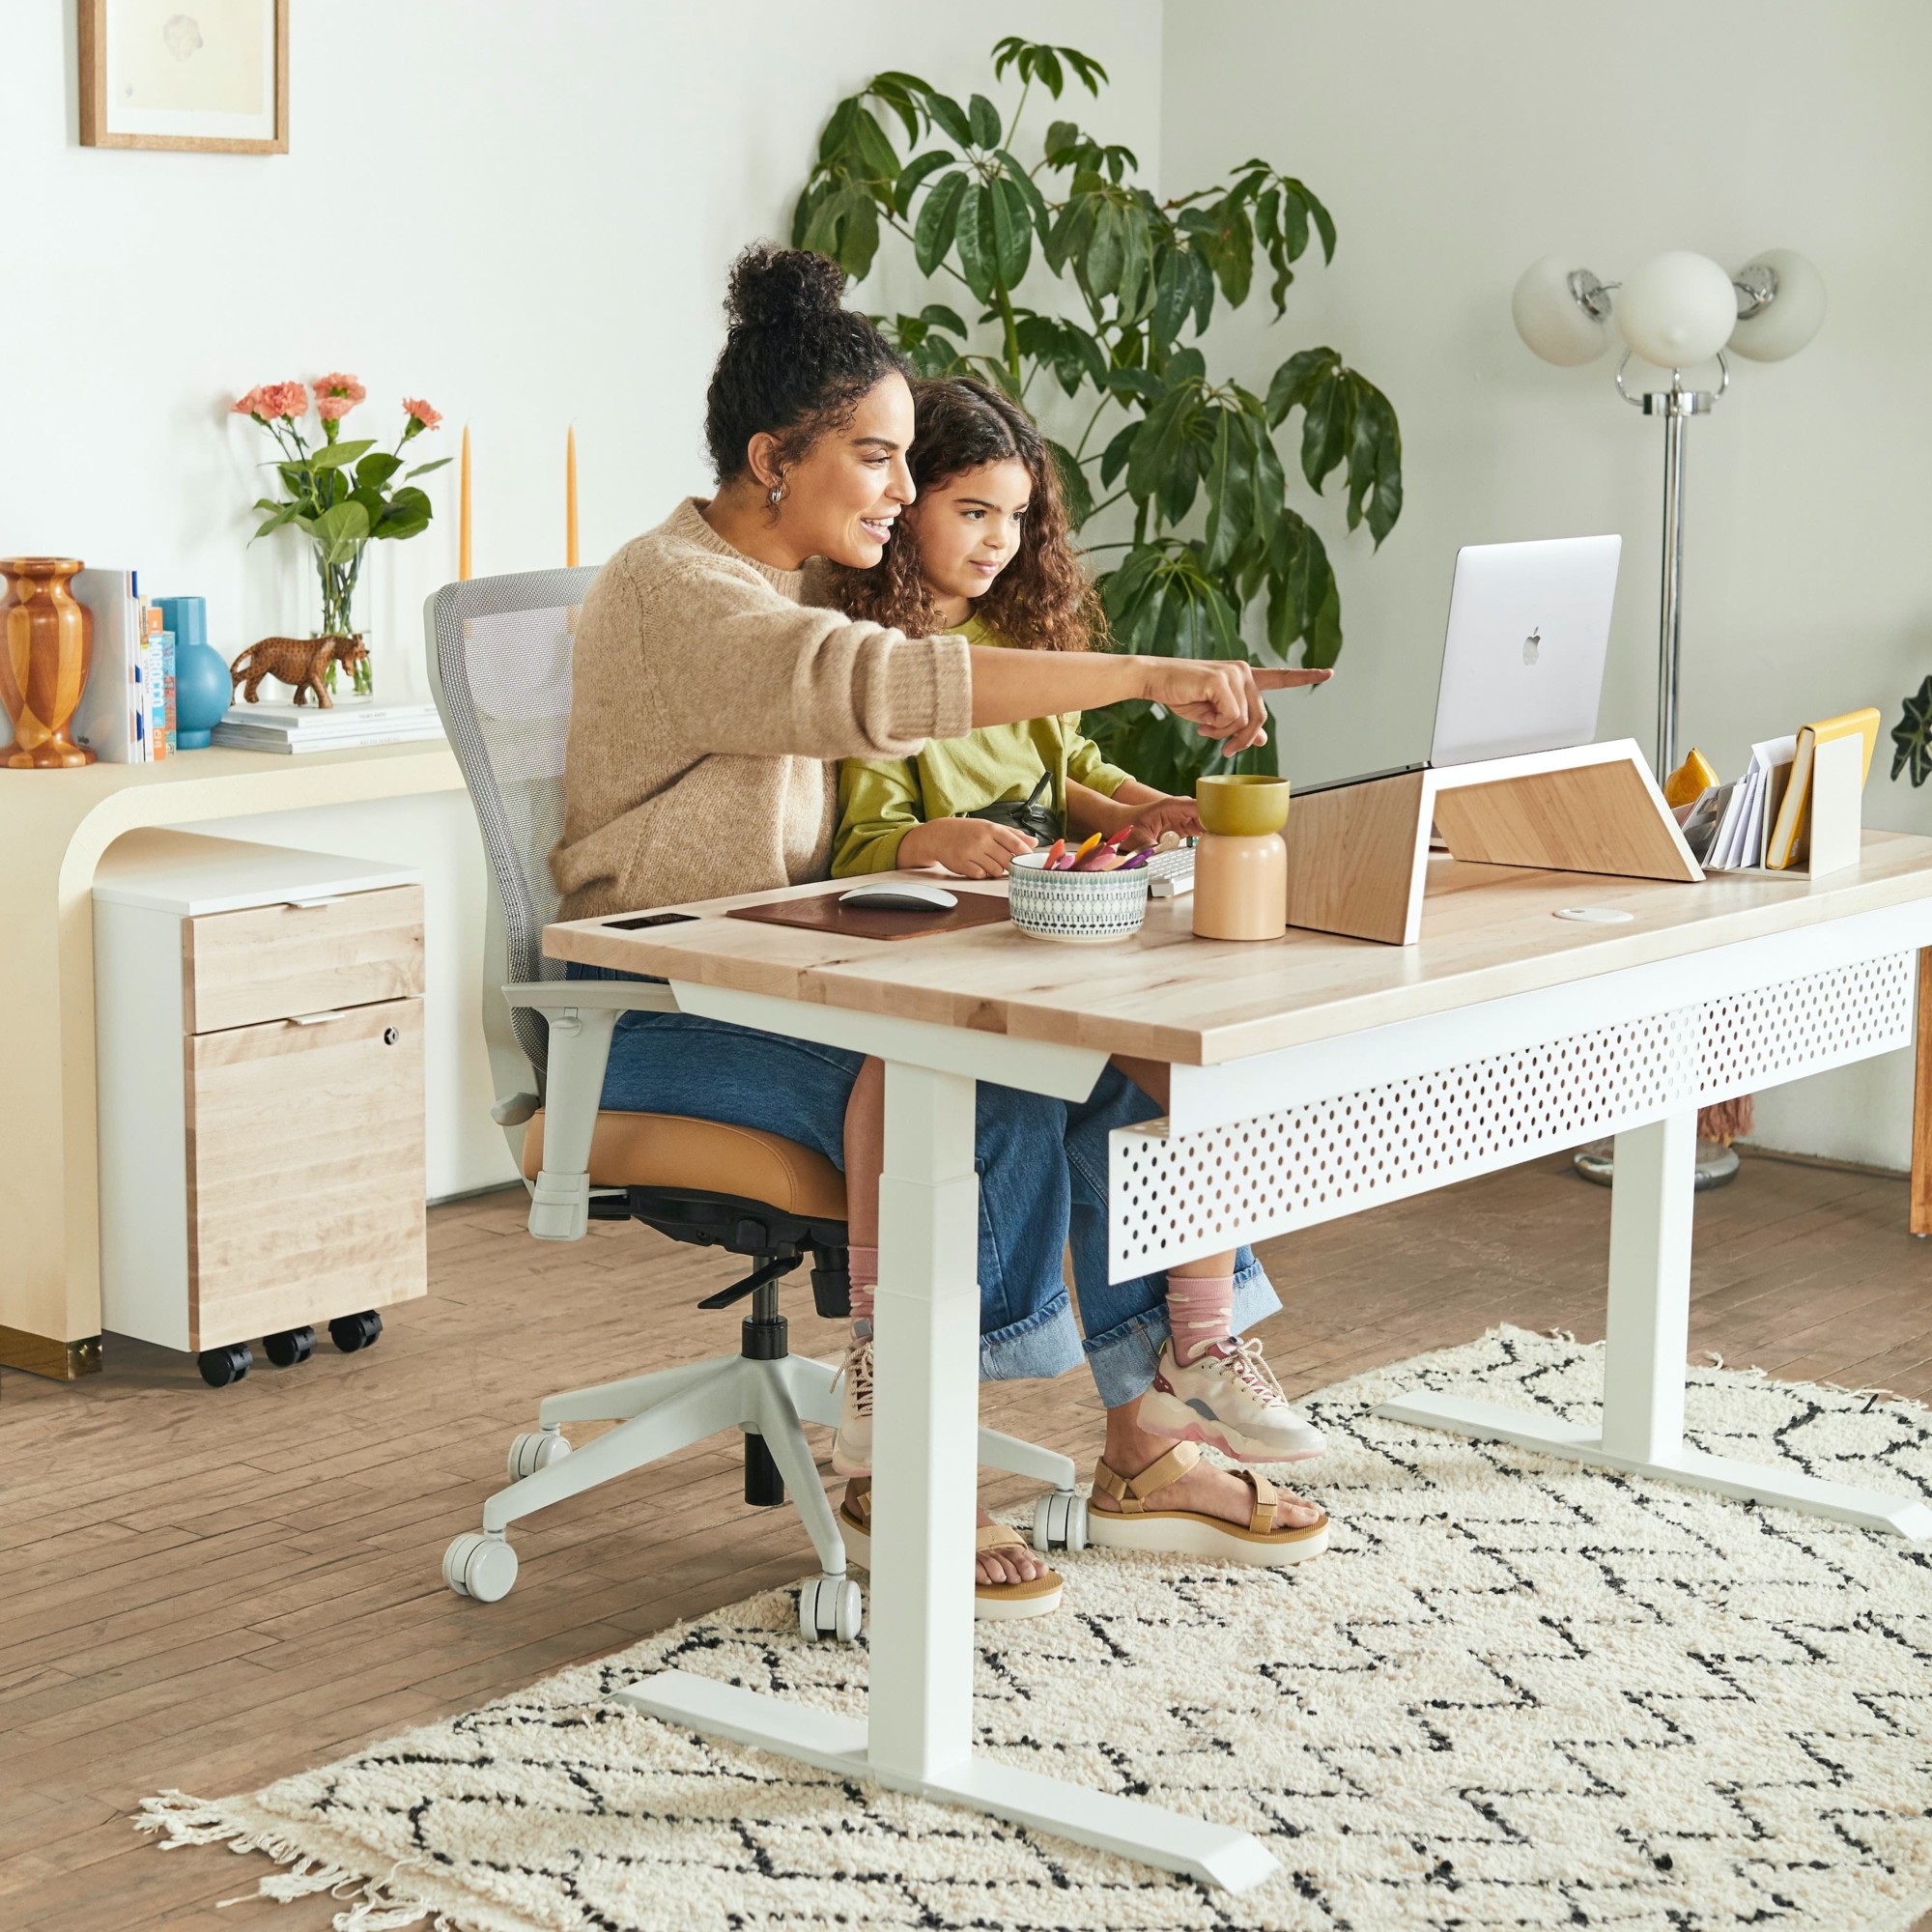 Frau mit Kind arbeitet am Schreibtisch